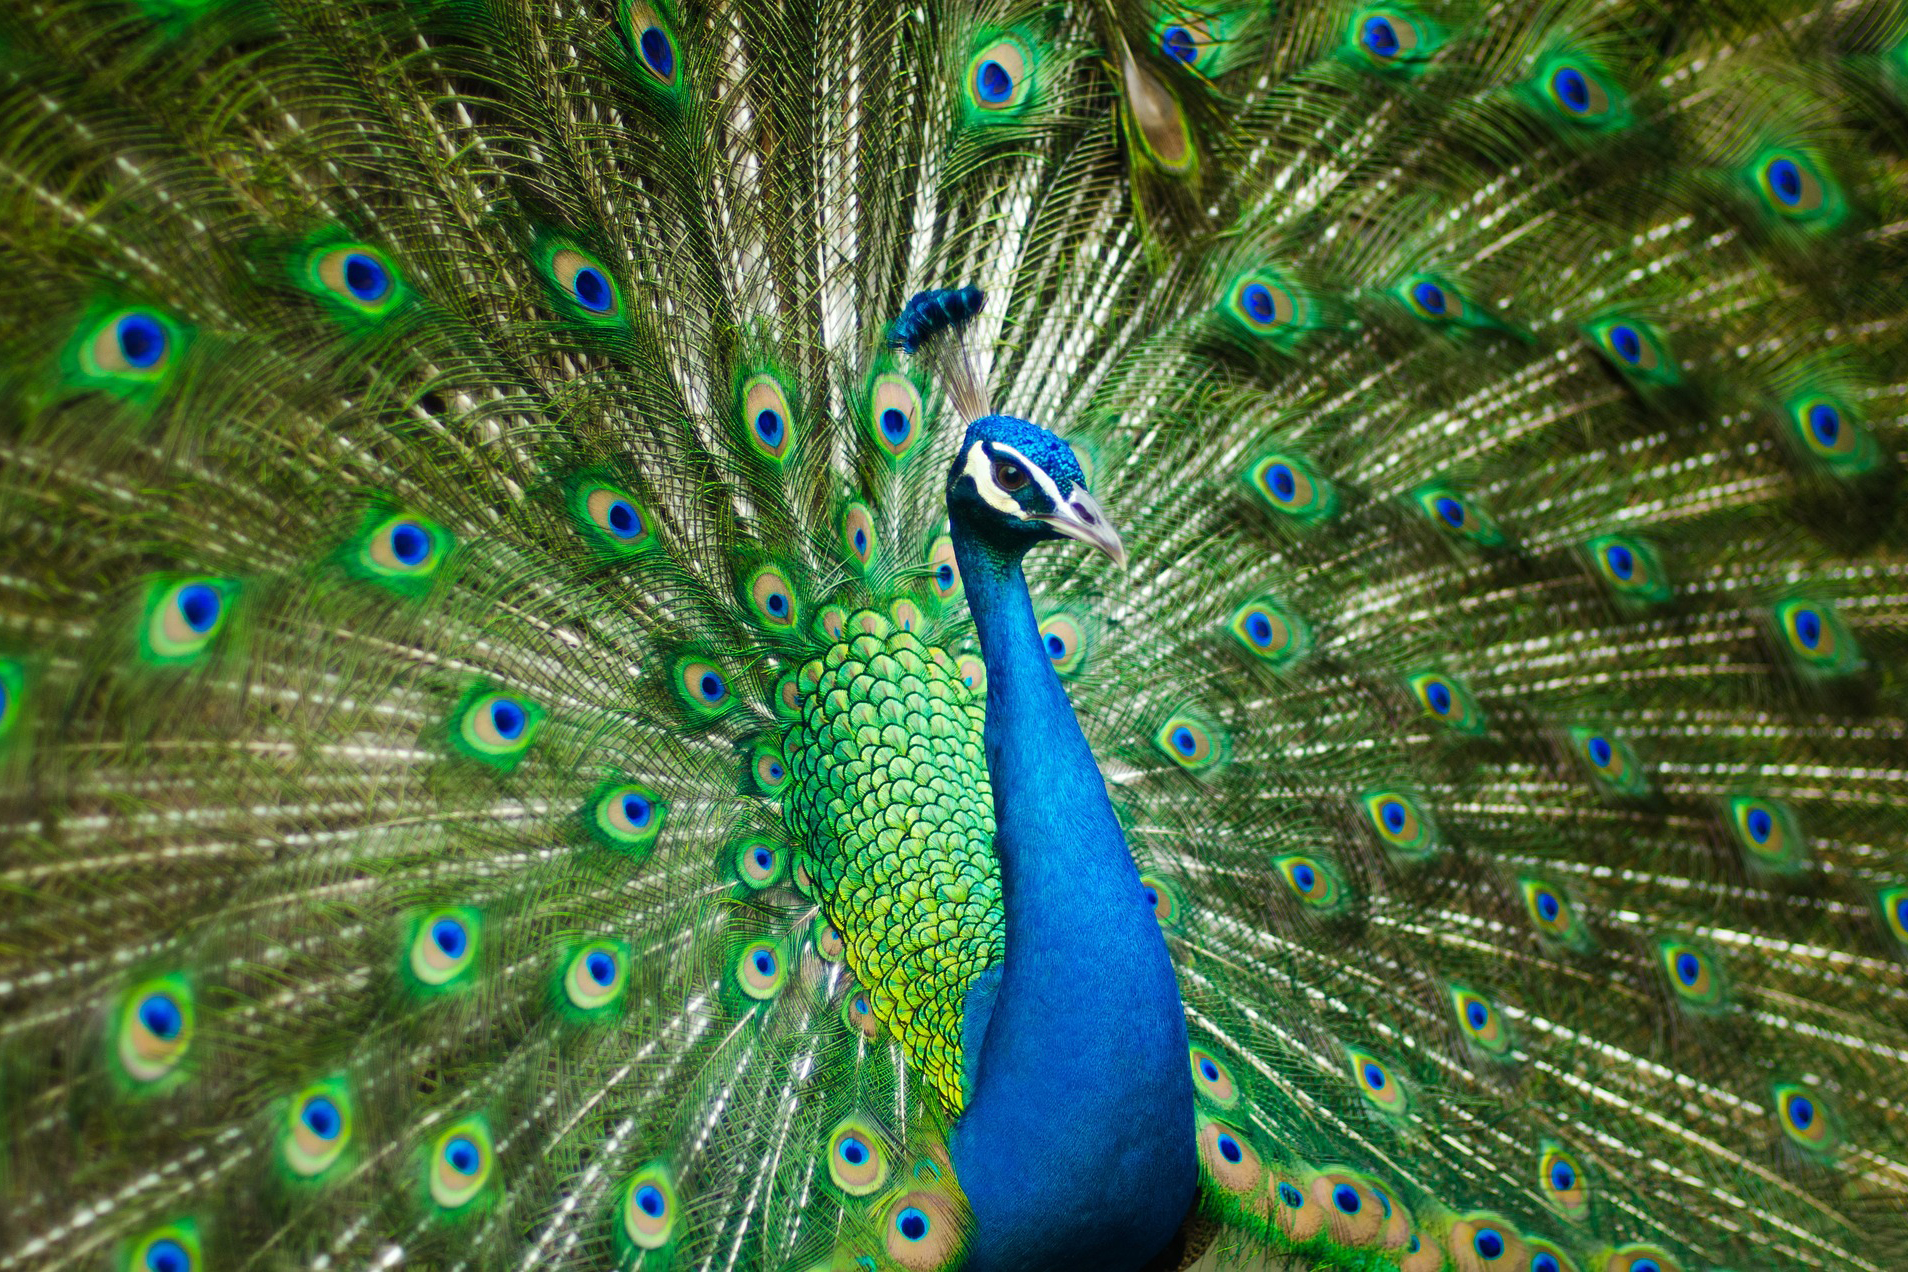 Påfågel med uppspärrade vingar i grönt och blått